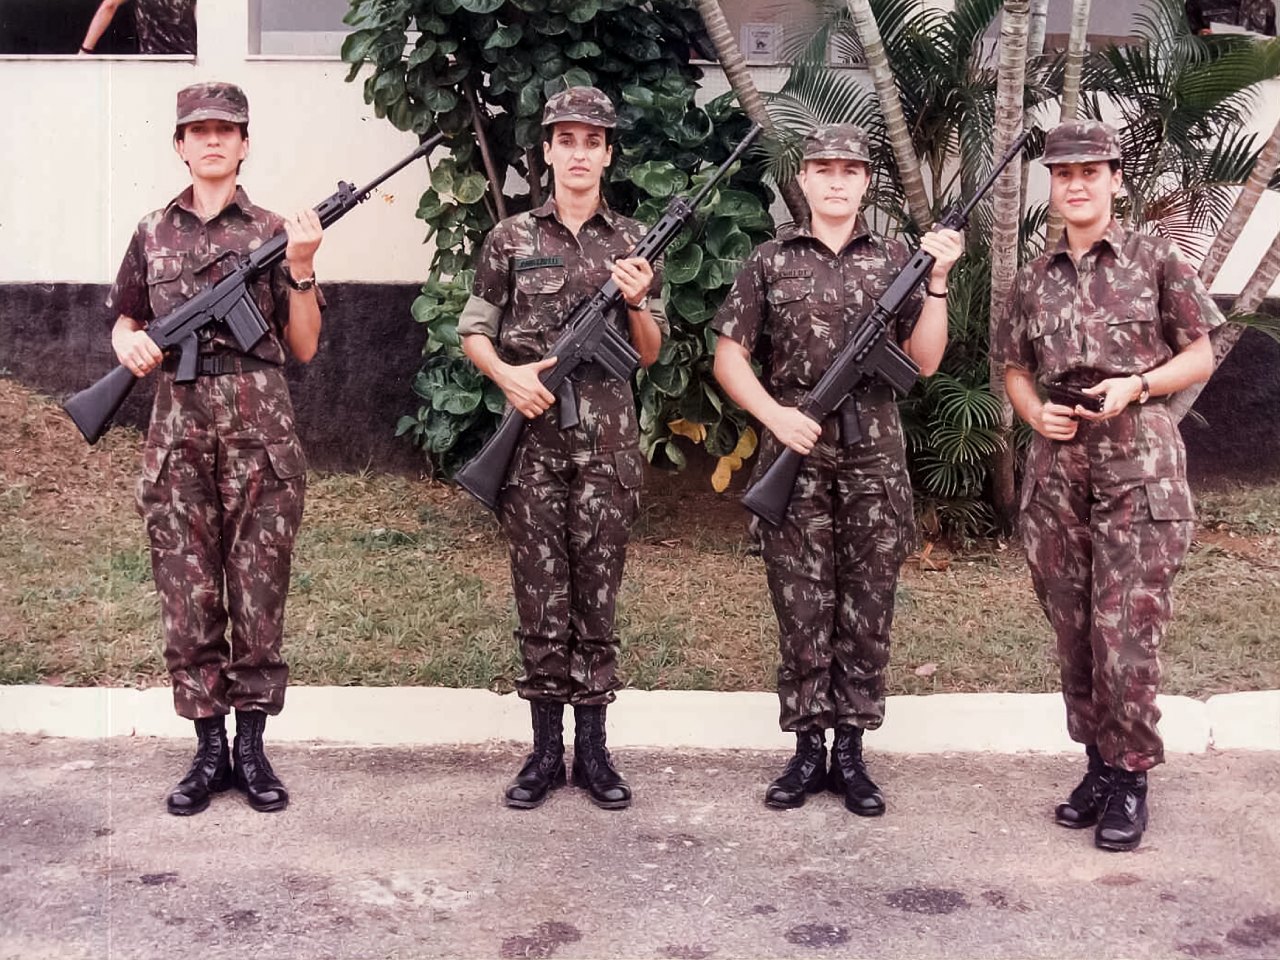 Exército brasileiro começa a treinar mulheres para o front